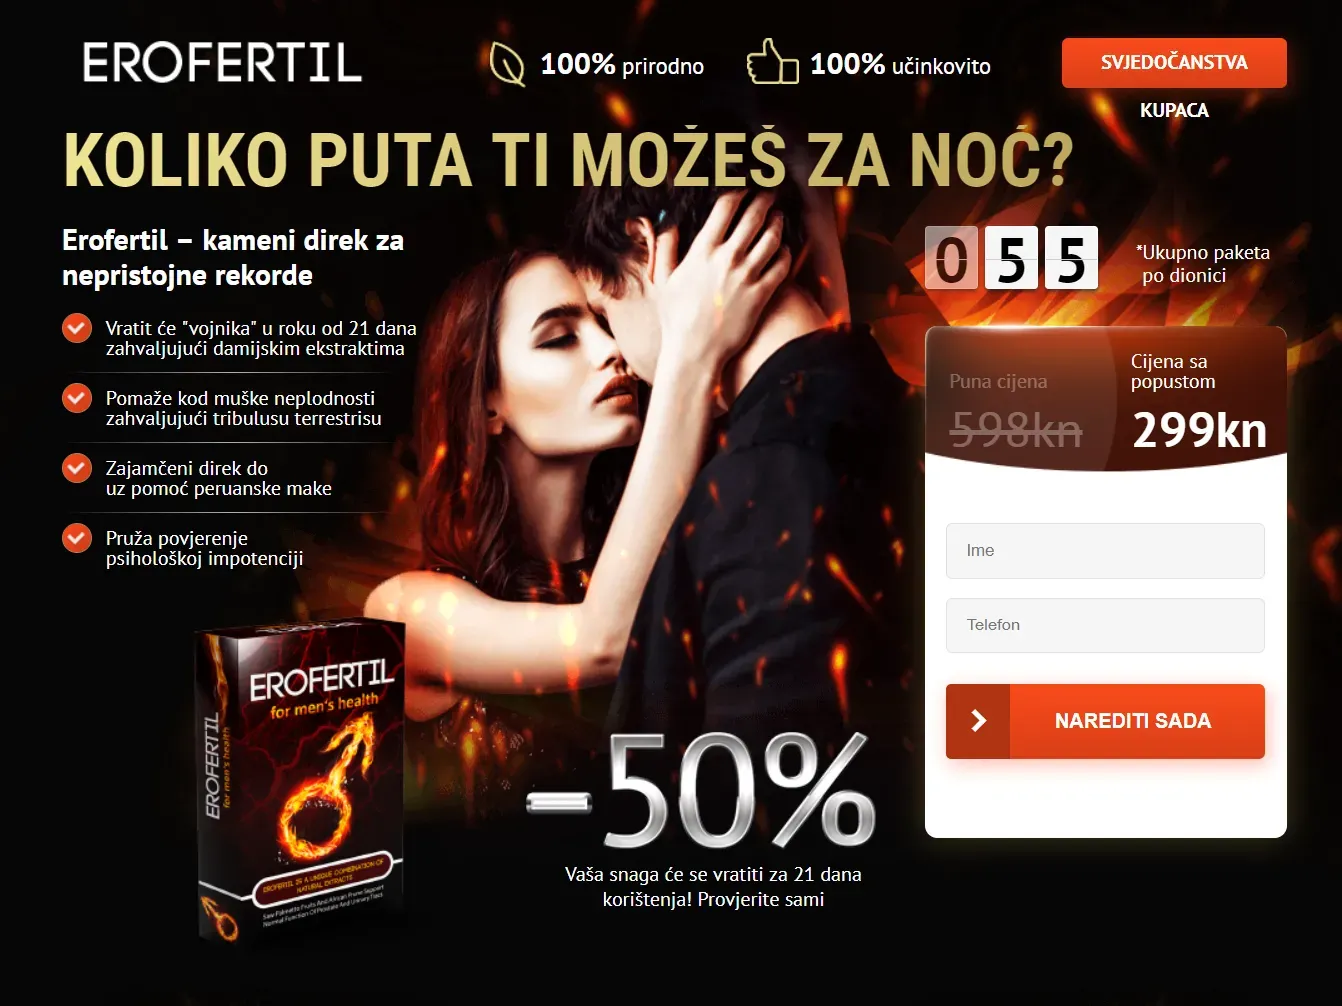 Money amulet upotreba - forum - Srbija - cena - iskustva - komentari - u apotekama - gde kupiti.